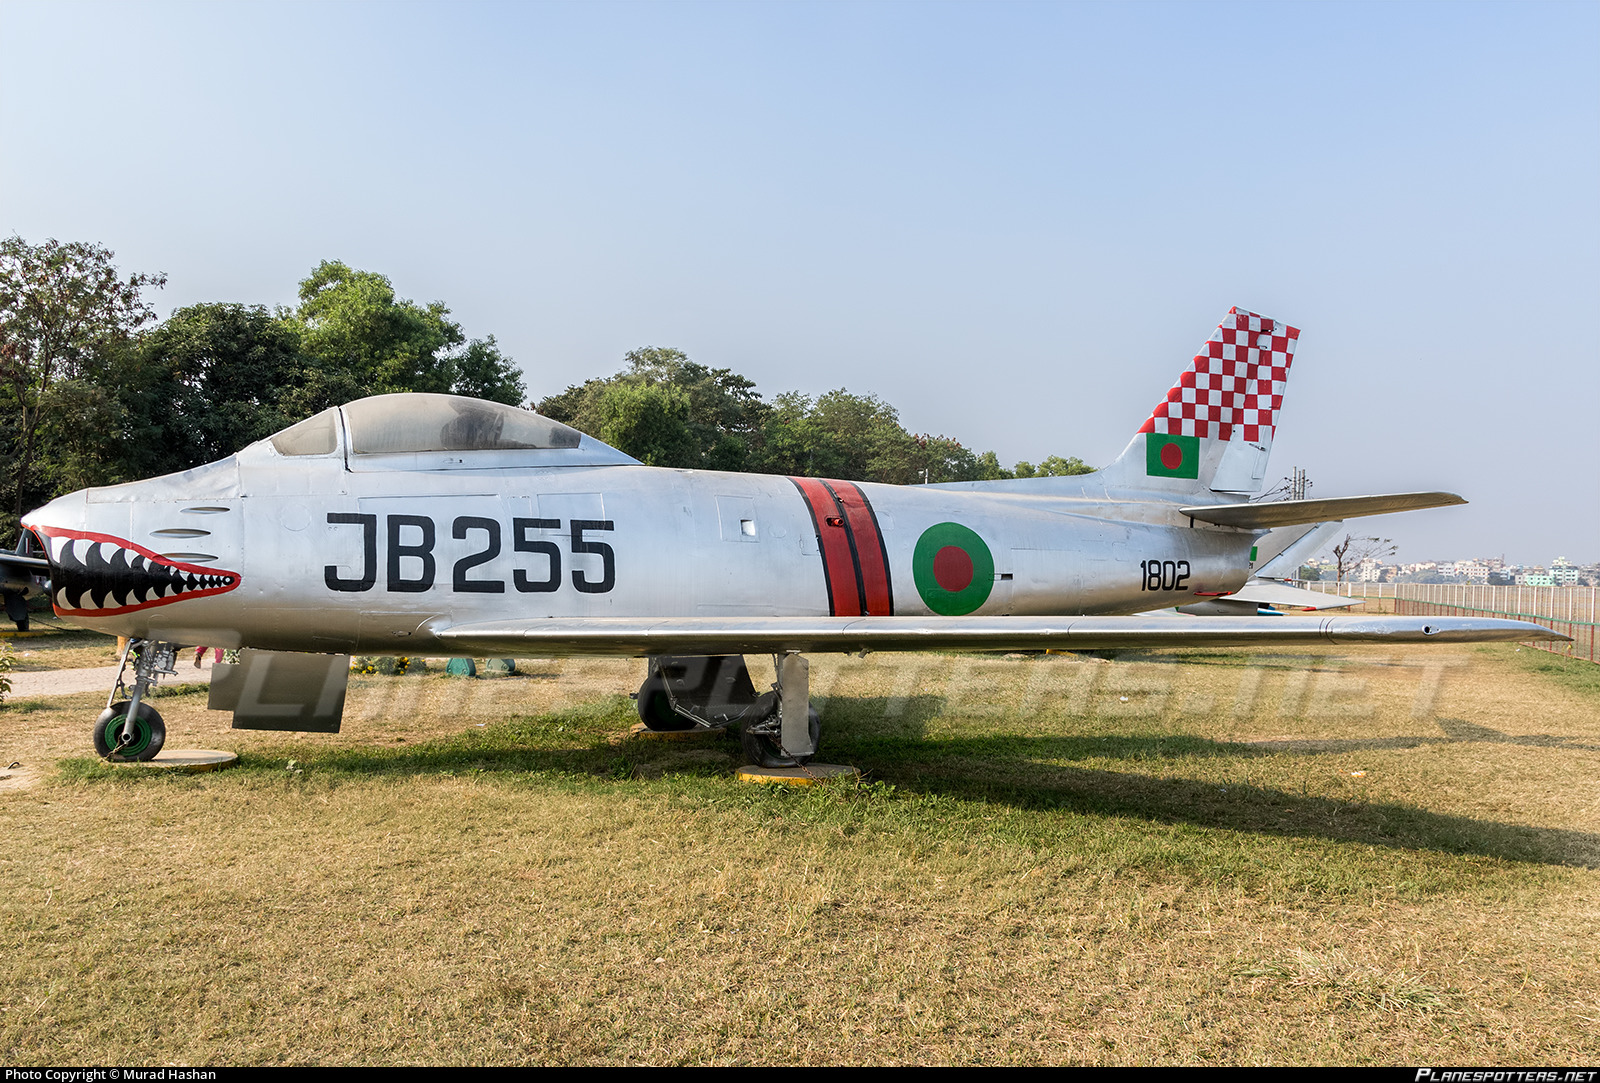 jb255-bangladesh-air-force-north-american-f-86-sabre_PlanespottersNet_674021_15eab96ab7.jpg